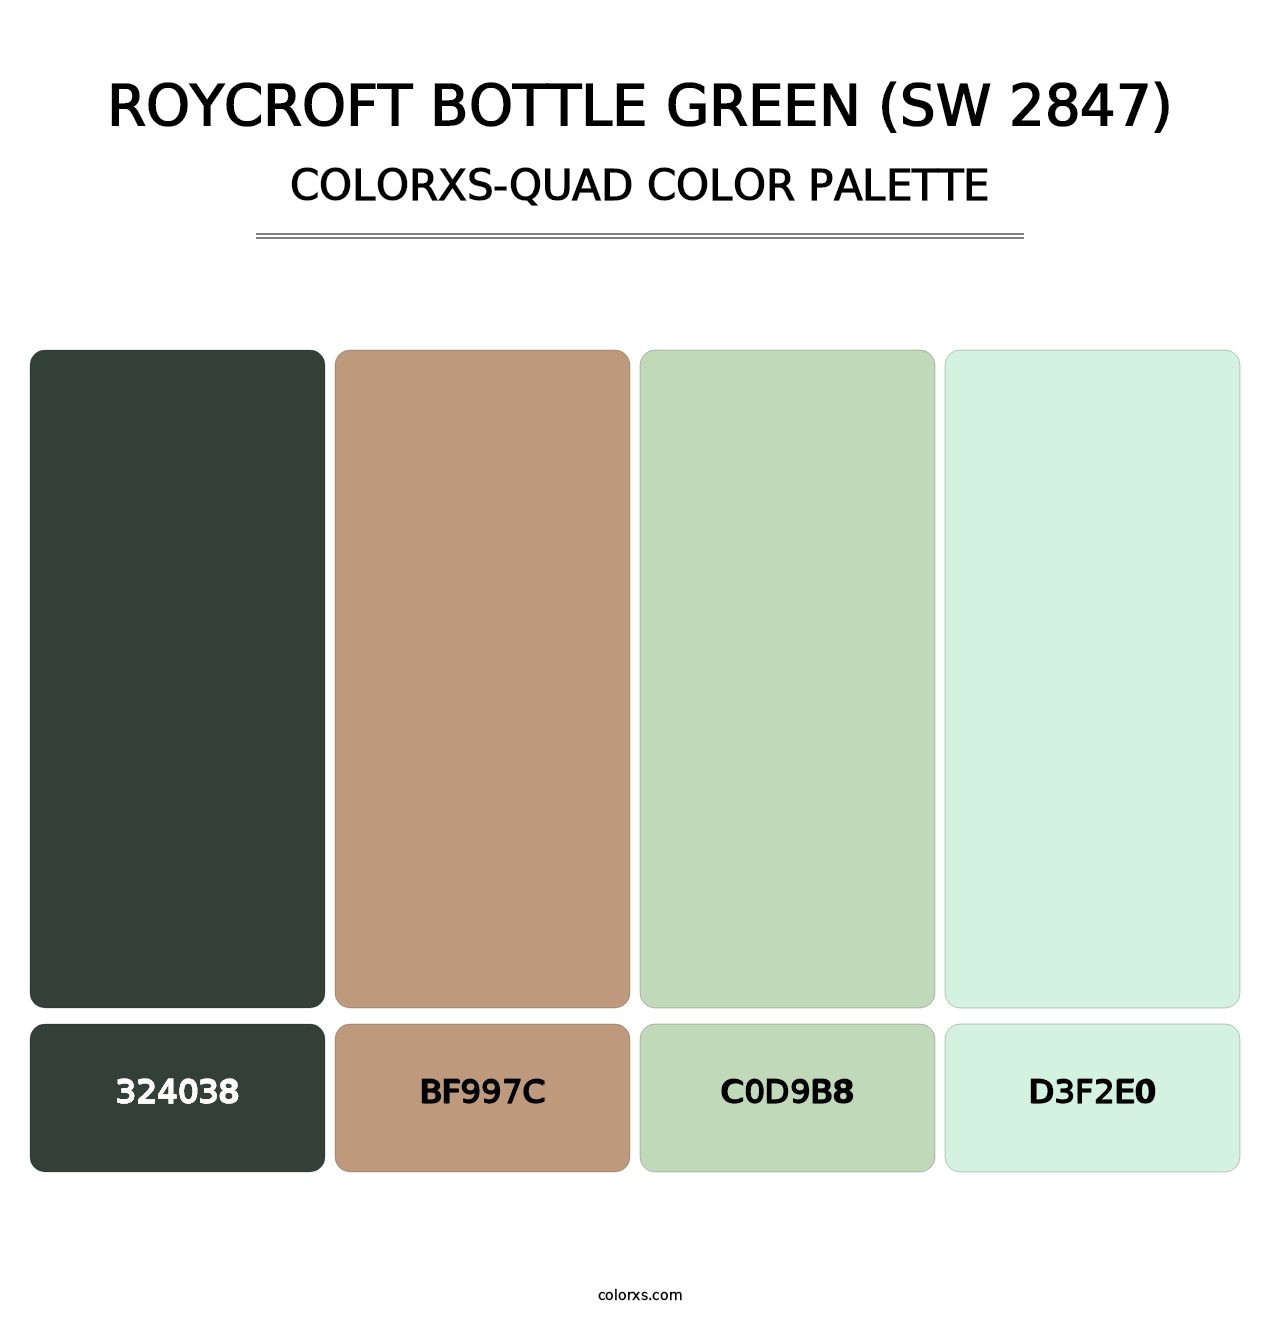 Roycroft Bottle Green (SW 2847) - Colorxs Quad Palette